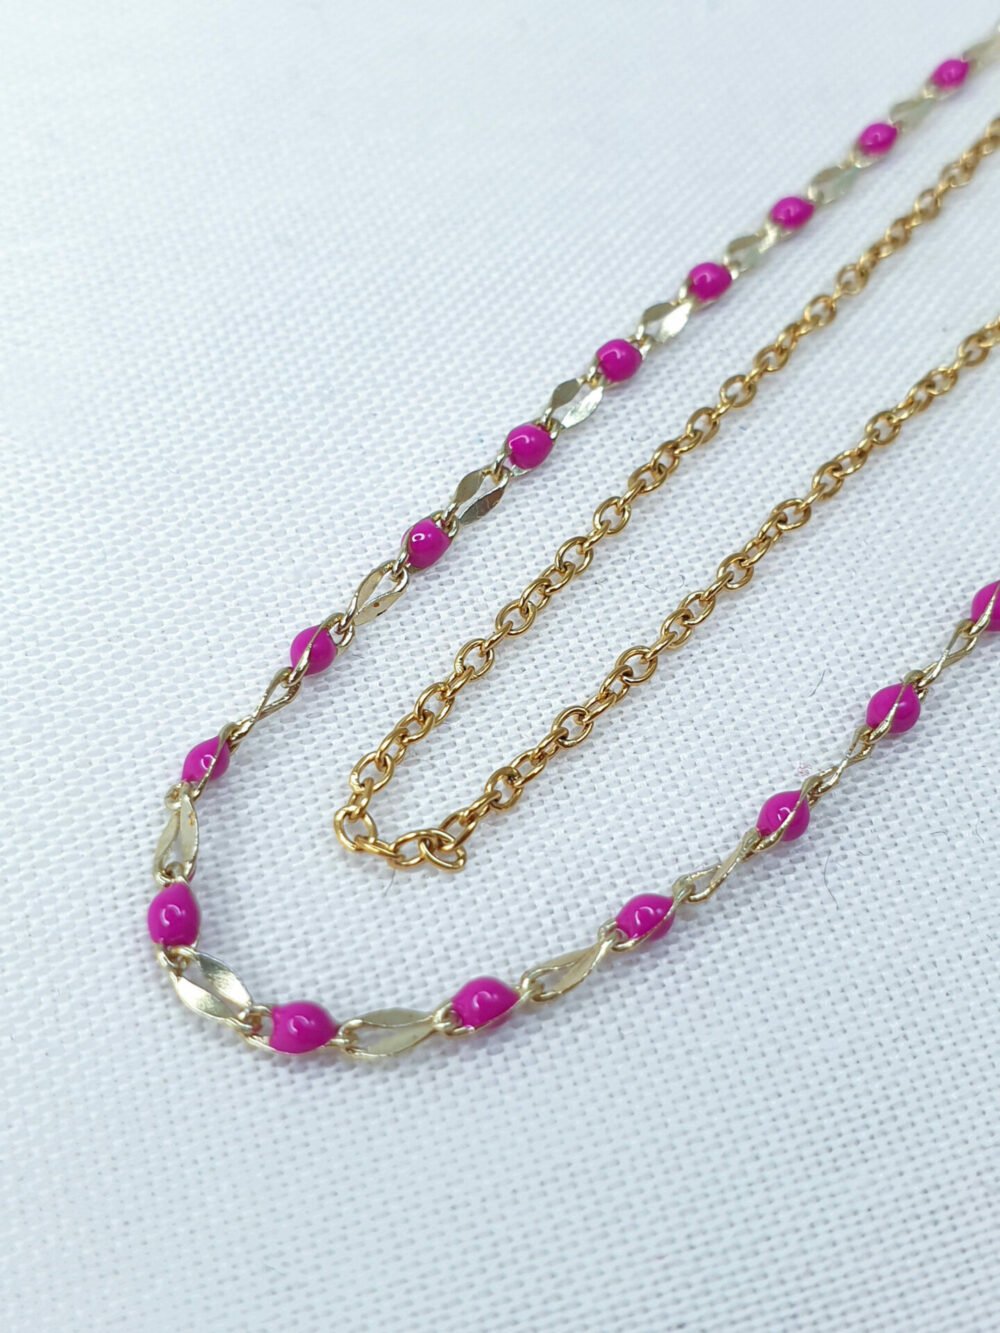 bijoux femme barcelone acier inoxydable laiton plaqué or doré fait main collier double chaine perle émaille coloré violet mauve